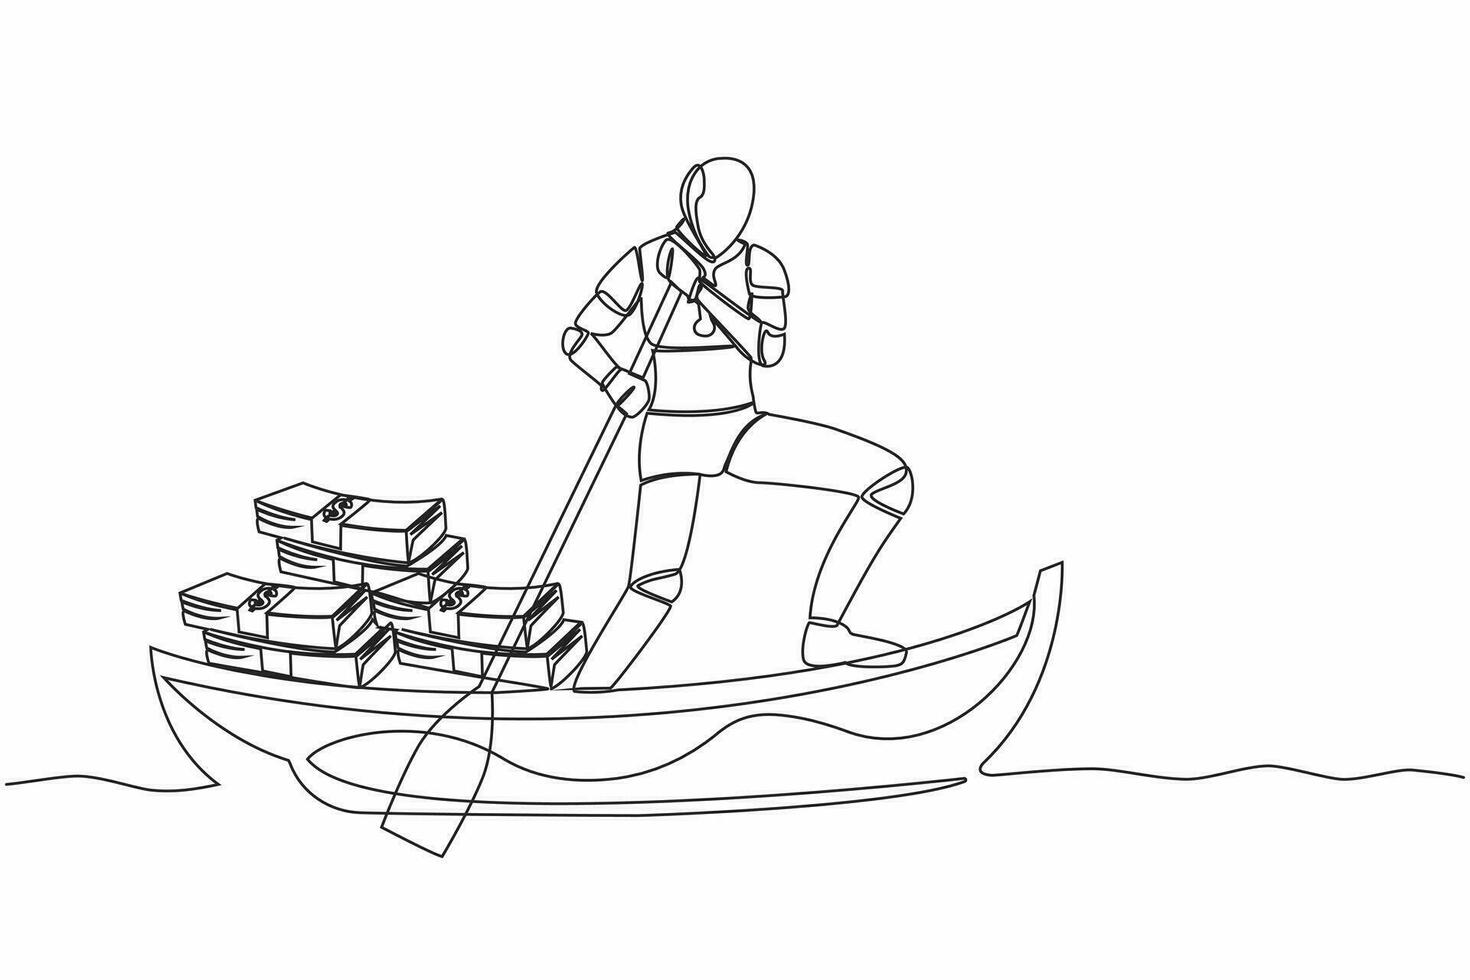 Single einer Linie Zeichnung Roboter Segeln Weg auf Boot mit Stapel von Banknote. Digital finanziell Verbrechen oder Geld Waschen. Roboter künstlich Intelligenz. kontinuierlich Linie zeichnen Design Vektor Illustration